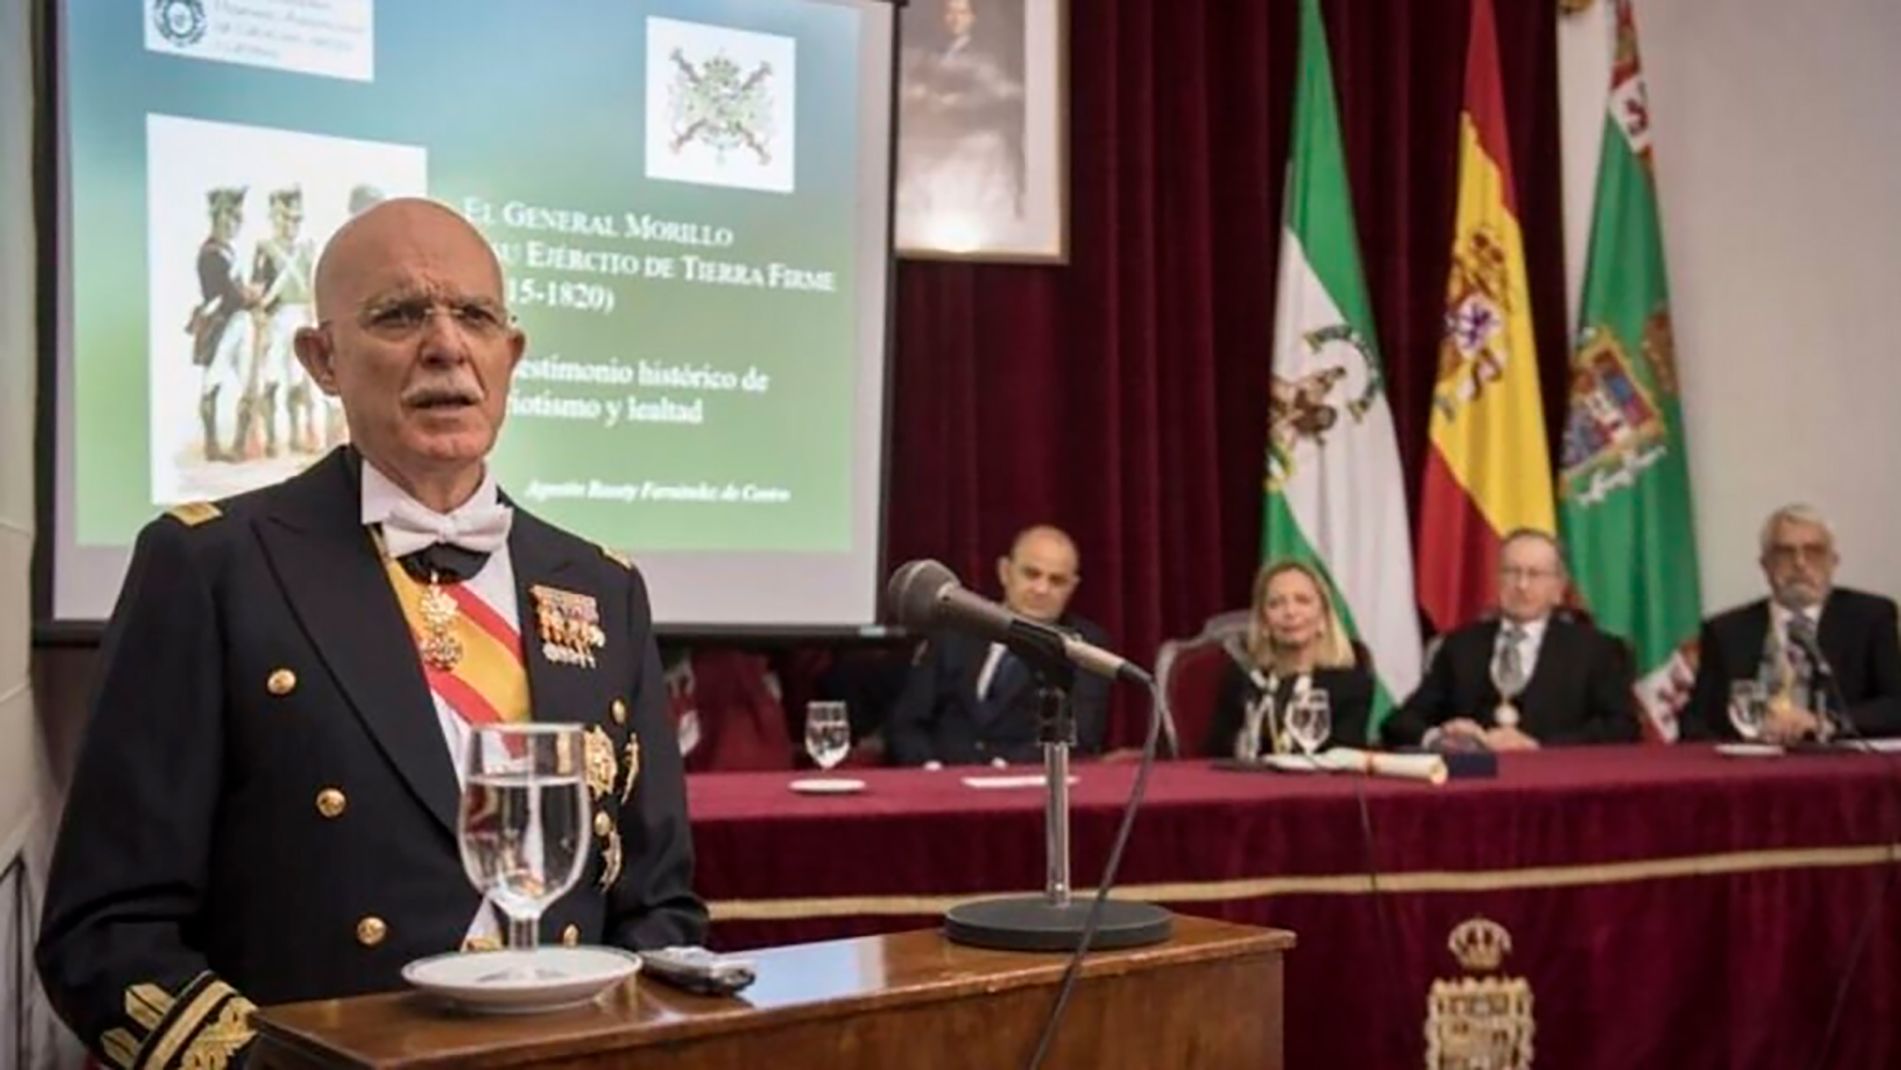 Los militares dan un paso al frente en política / El general de Infantería de Marina Agustín Rosety Fernández de Castro, cabeza de lista por Vox en Cádiz